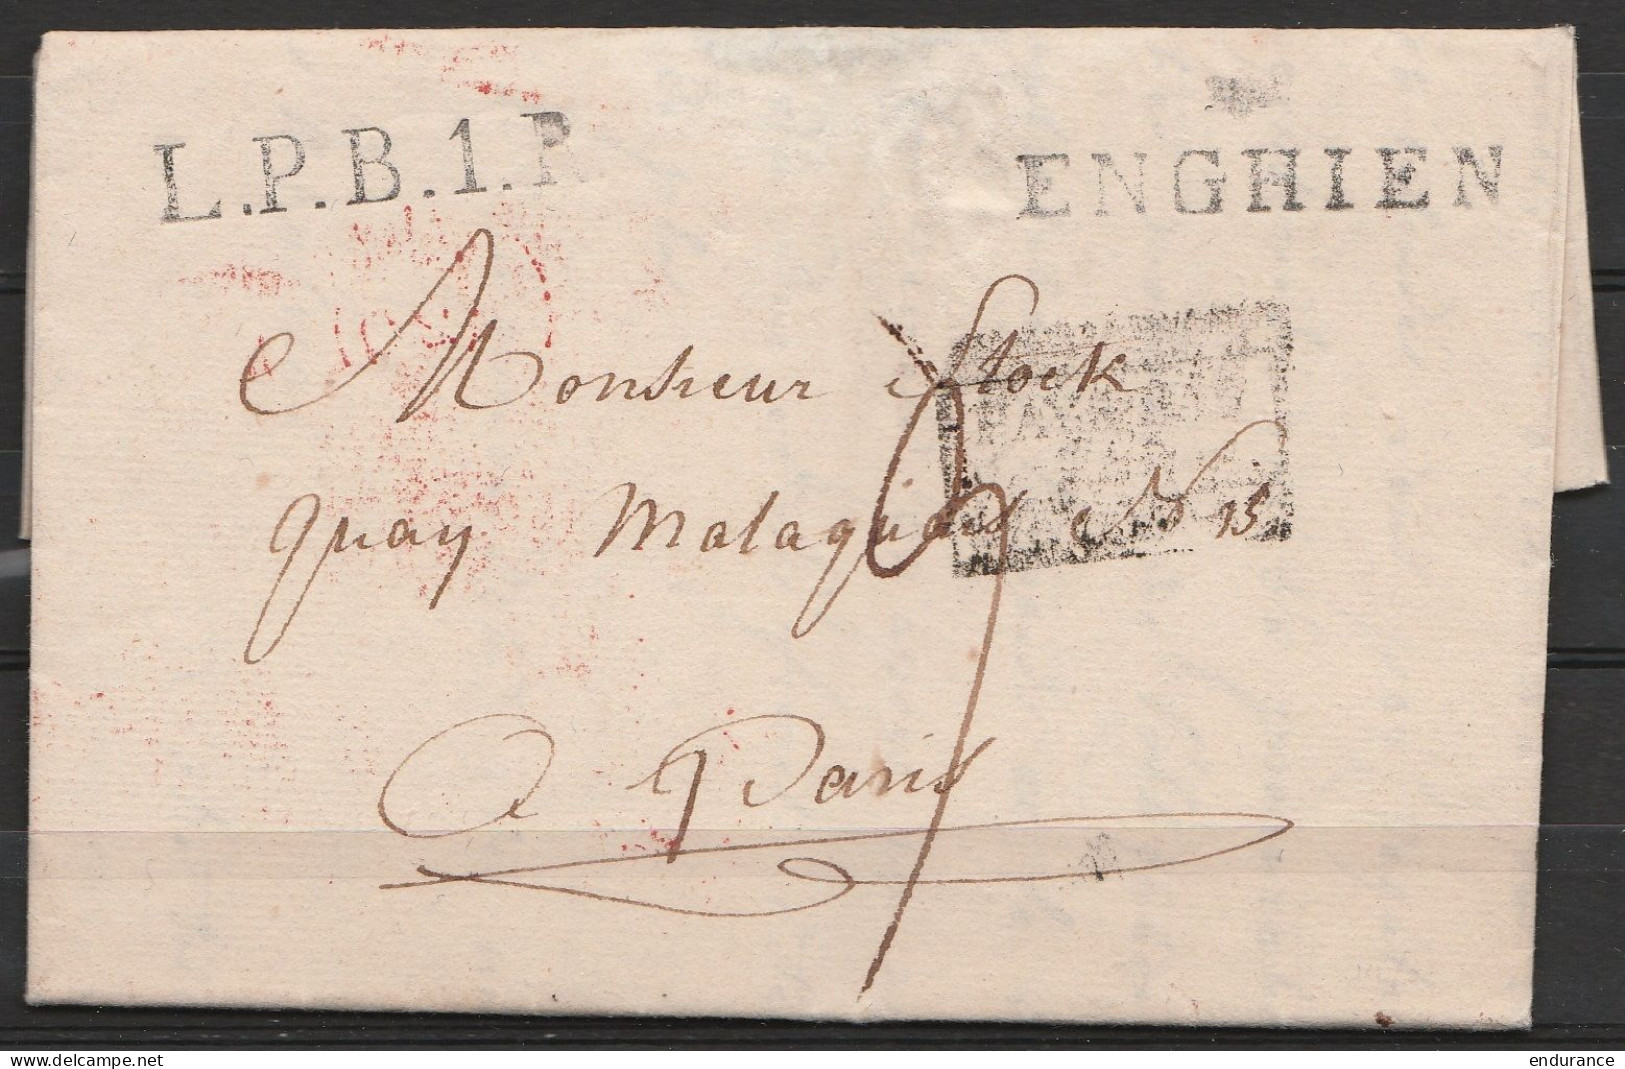 L. Datée 26 Juin 1823 D'ENGHIEN Pour PARIS - Griffes "ENGHIEN" & "L.P.B.1.R" - [PAYS-BAS PAR ...] - 1815-1830 (Période Hollandaise)